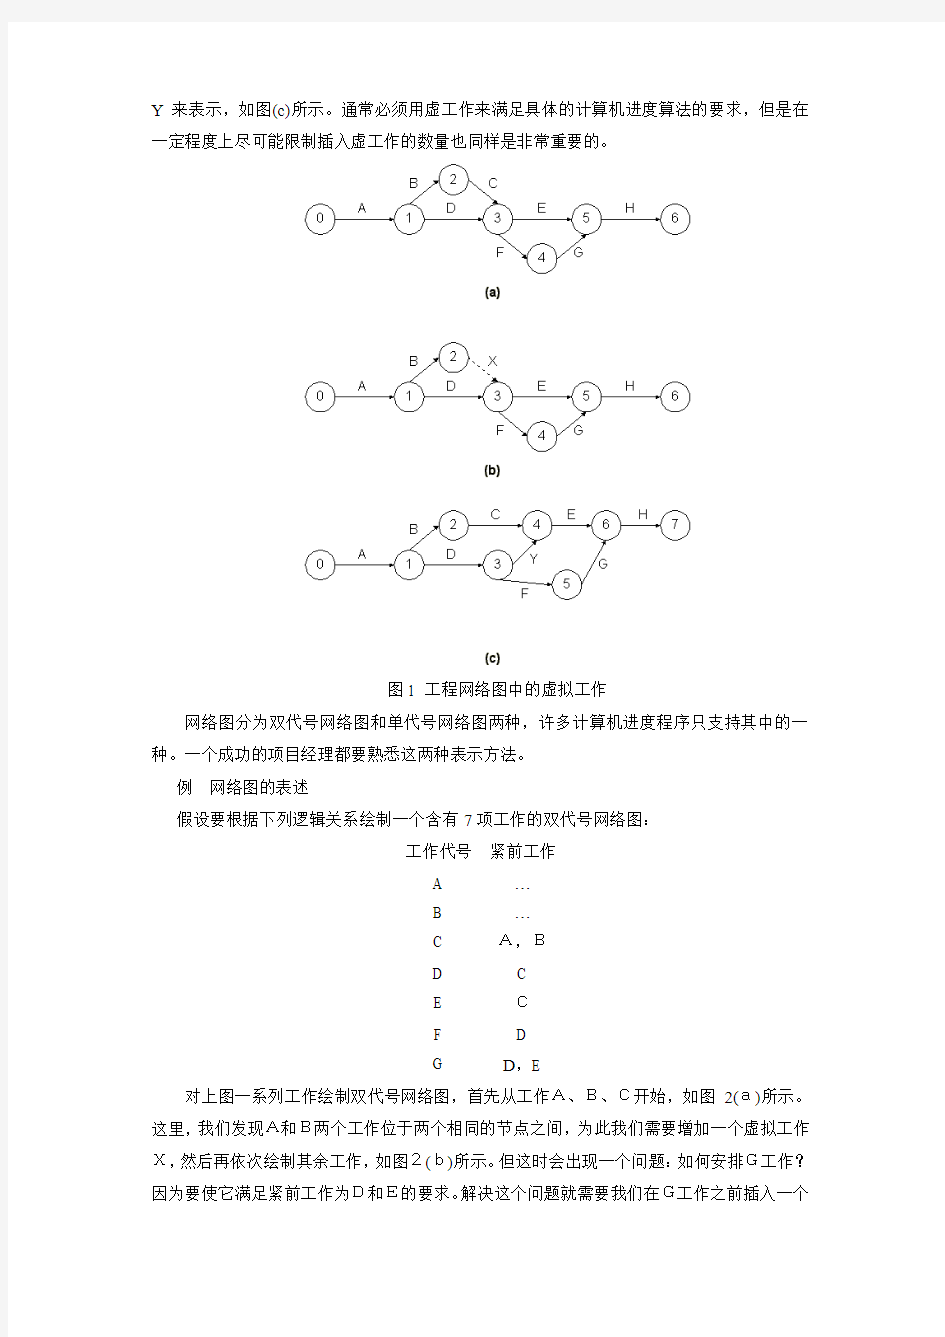 关键路径法(中文)